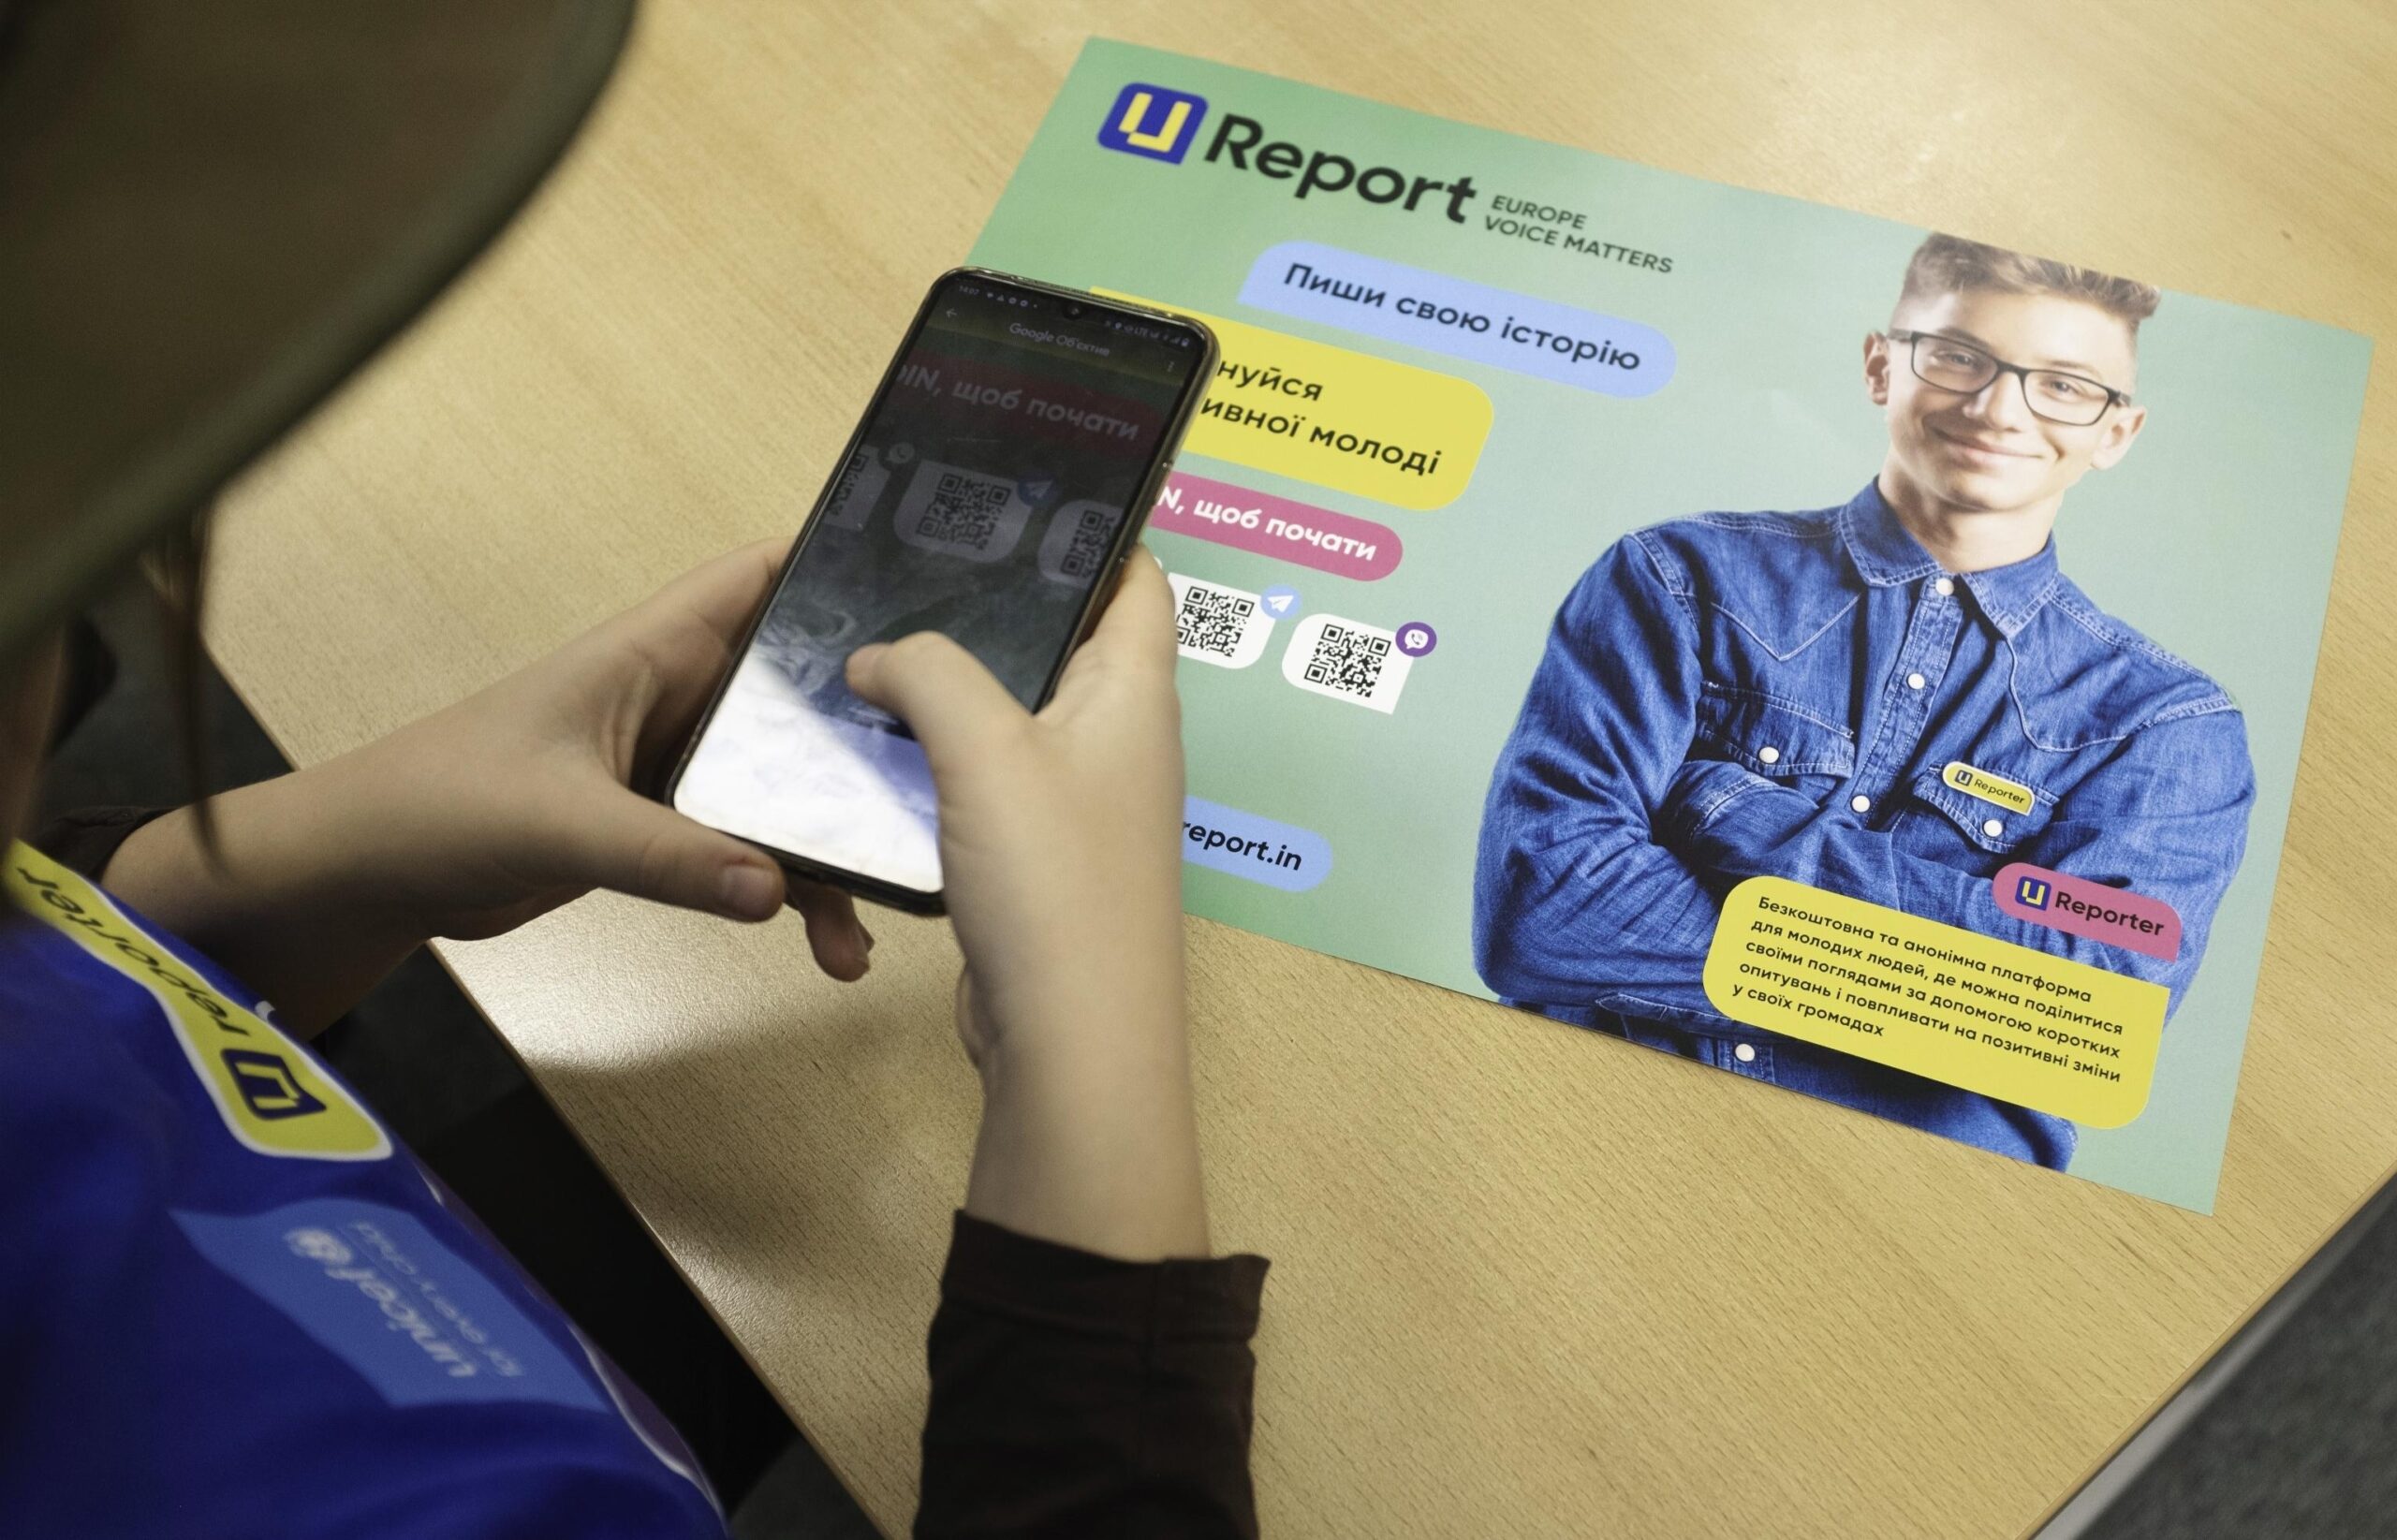 Jak chatbot UNICEF wyposaża ukraińską i polską młodzież w wiedzę, która pomaga im rozumieć, wyrażać i zarządzać swoimi emocjami